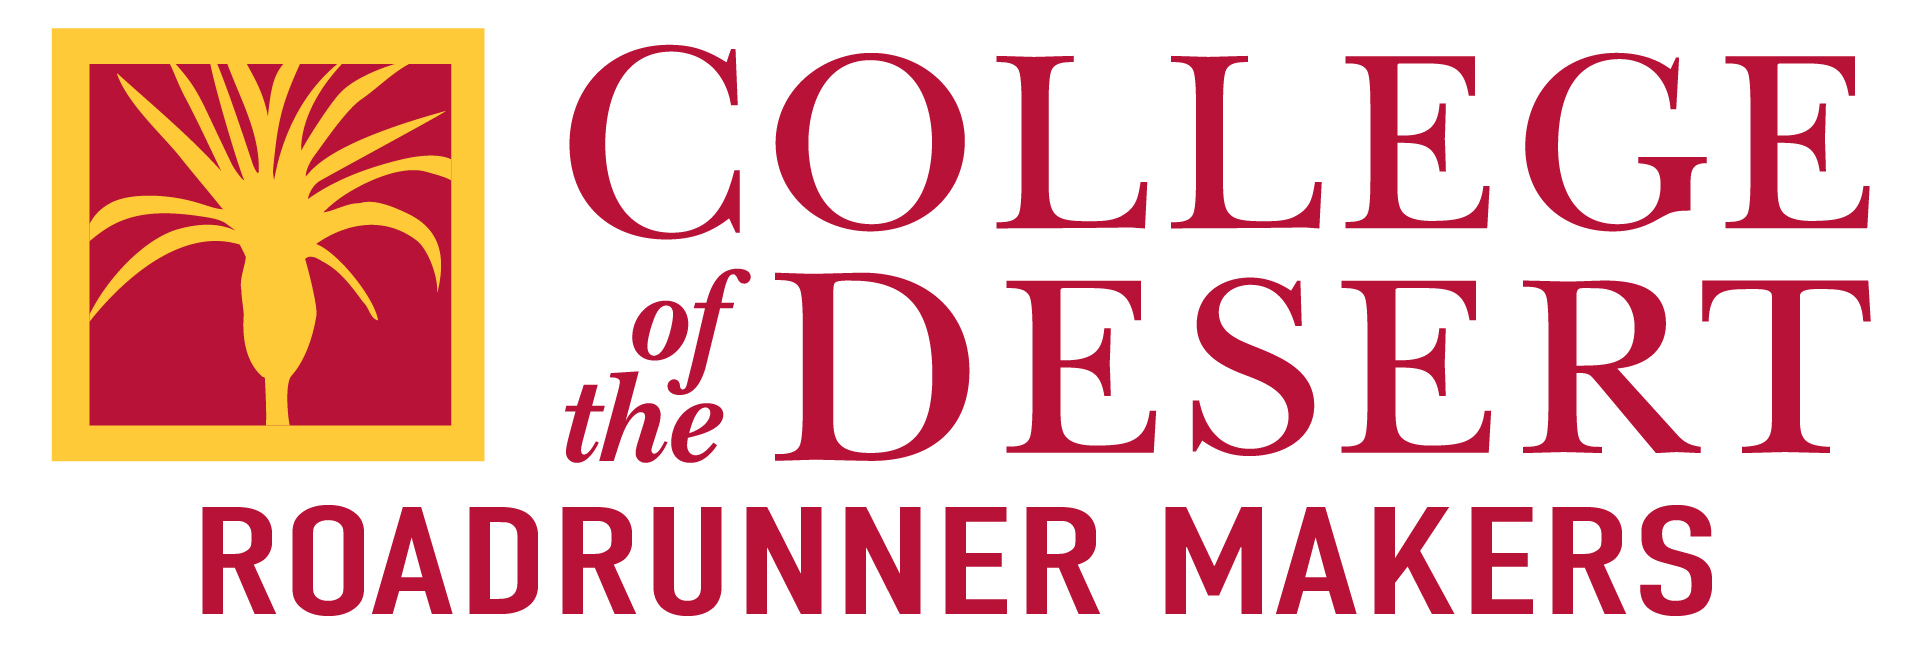 Roadrunner Makers COD Style Logo